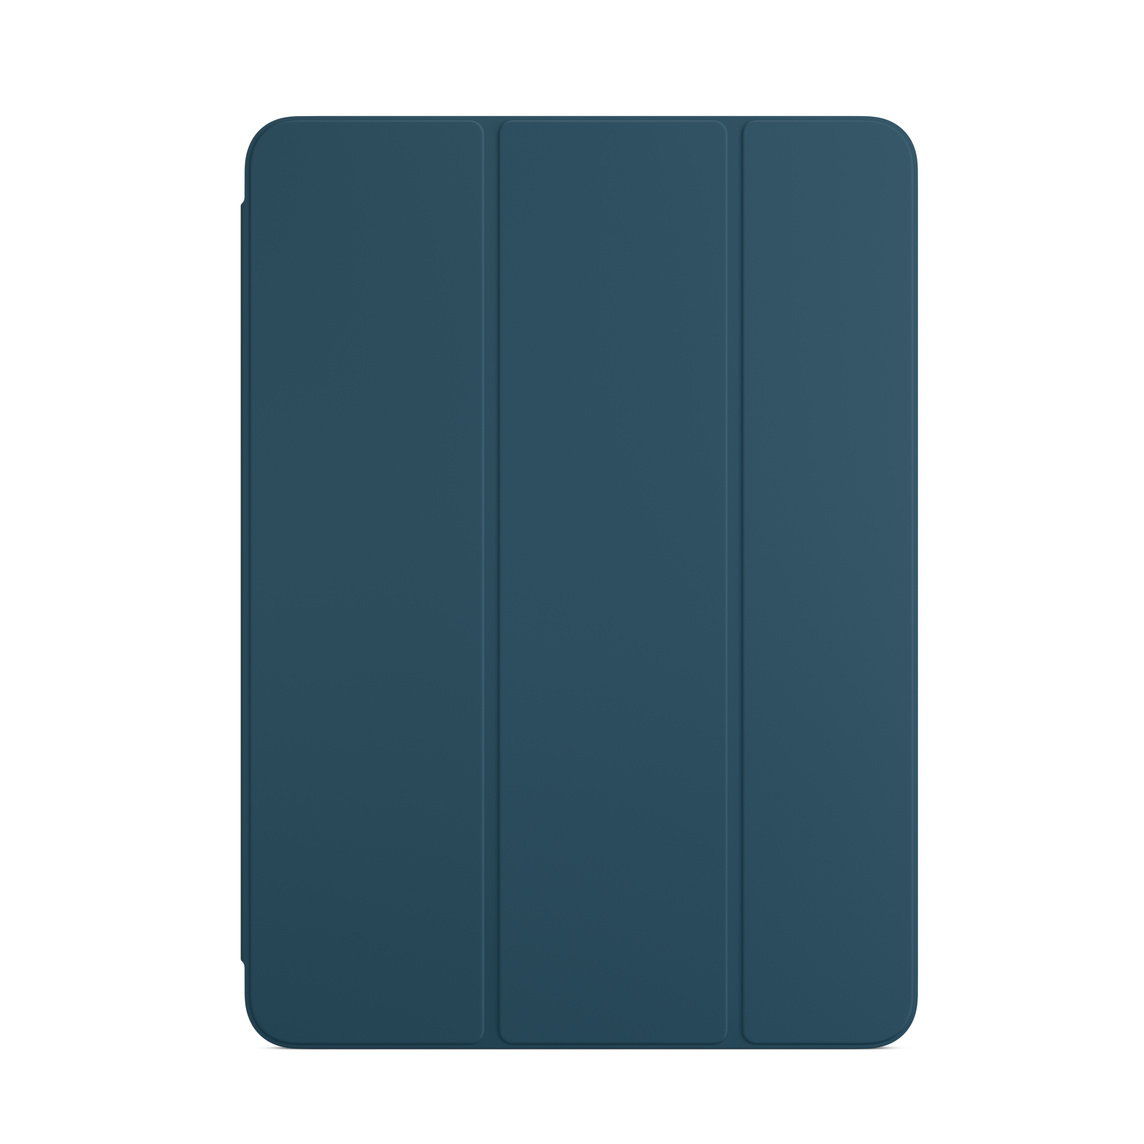 마린 블루 색상의 색상의 iPad Air용 Smart Folio.